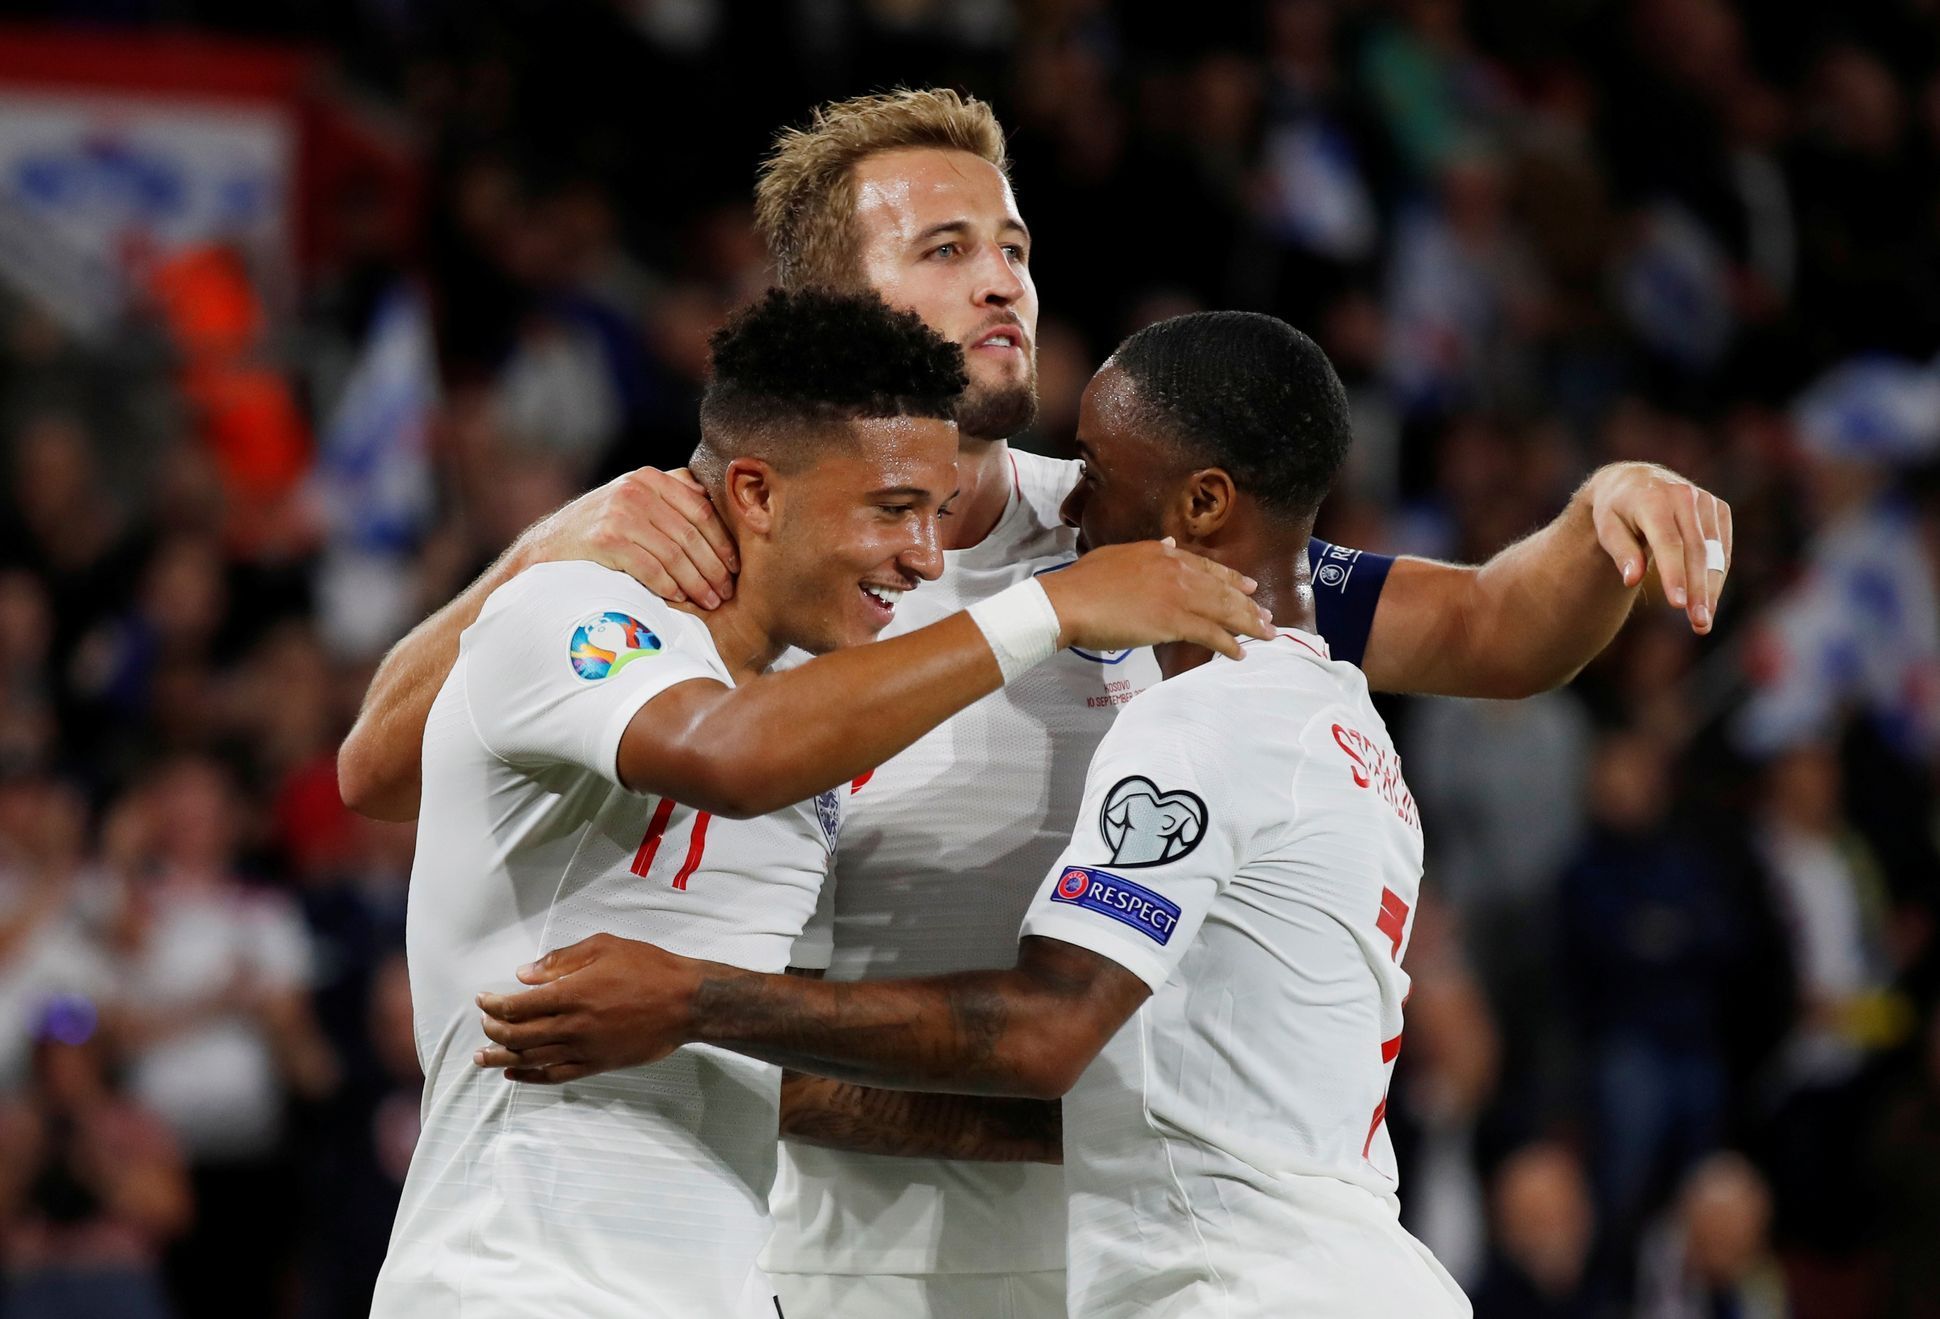 Euro 2020 Qualifier - Group A - England v Kosovo